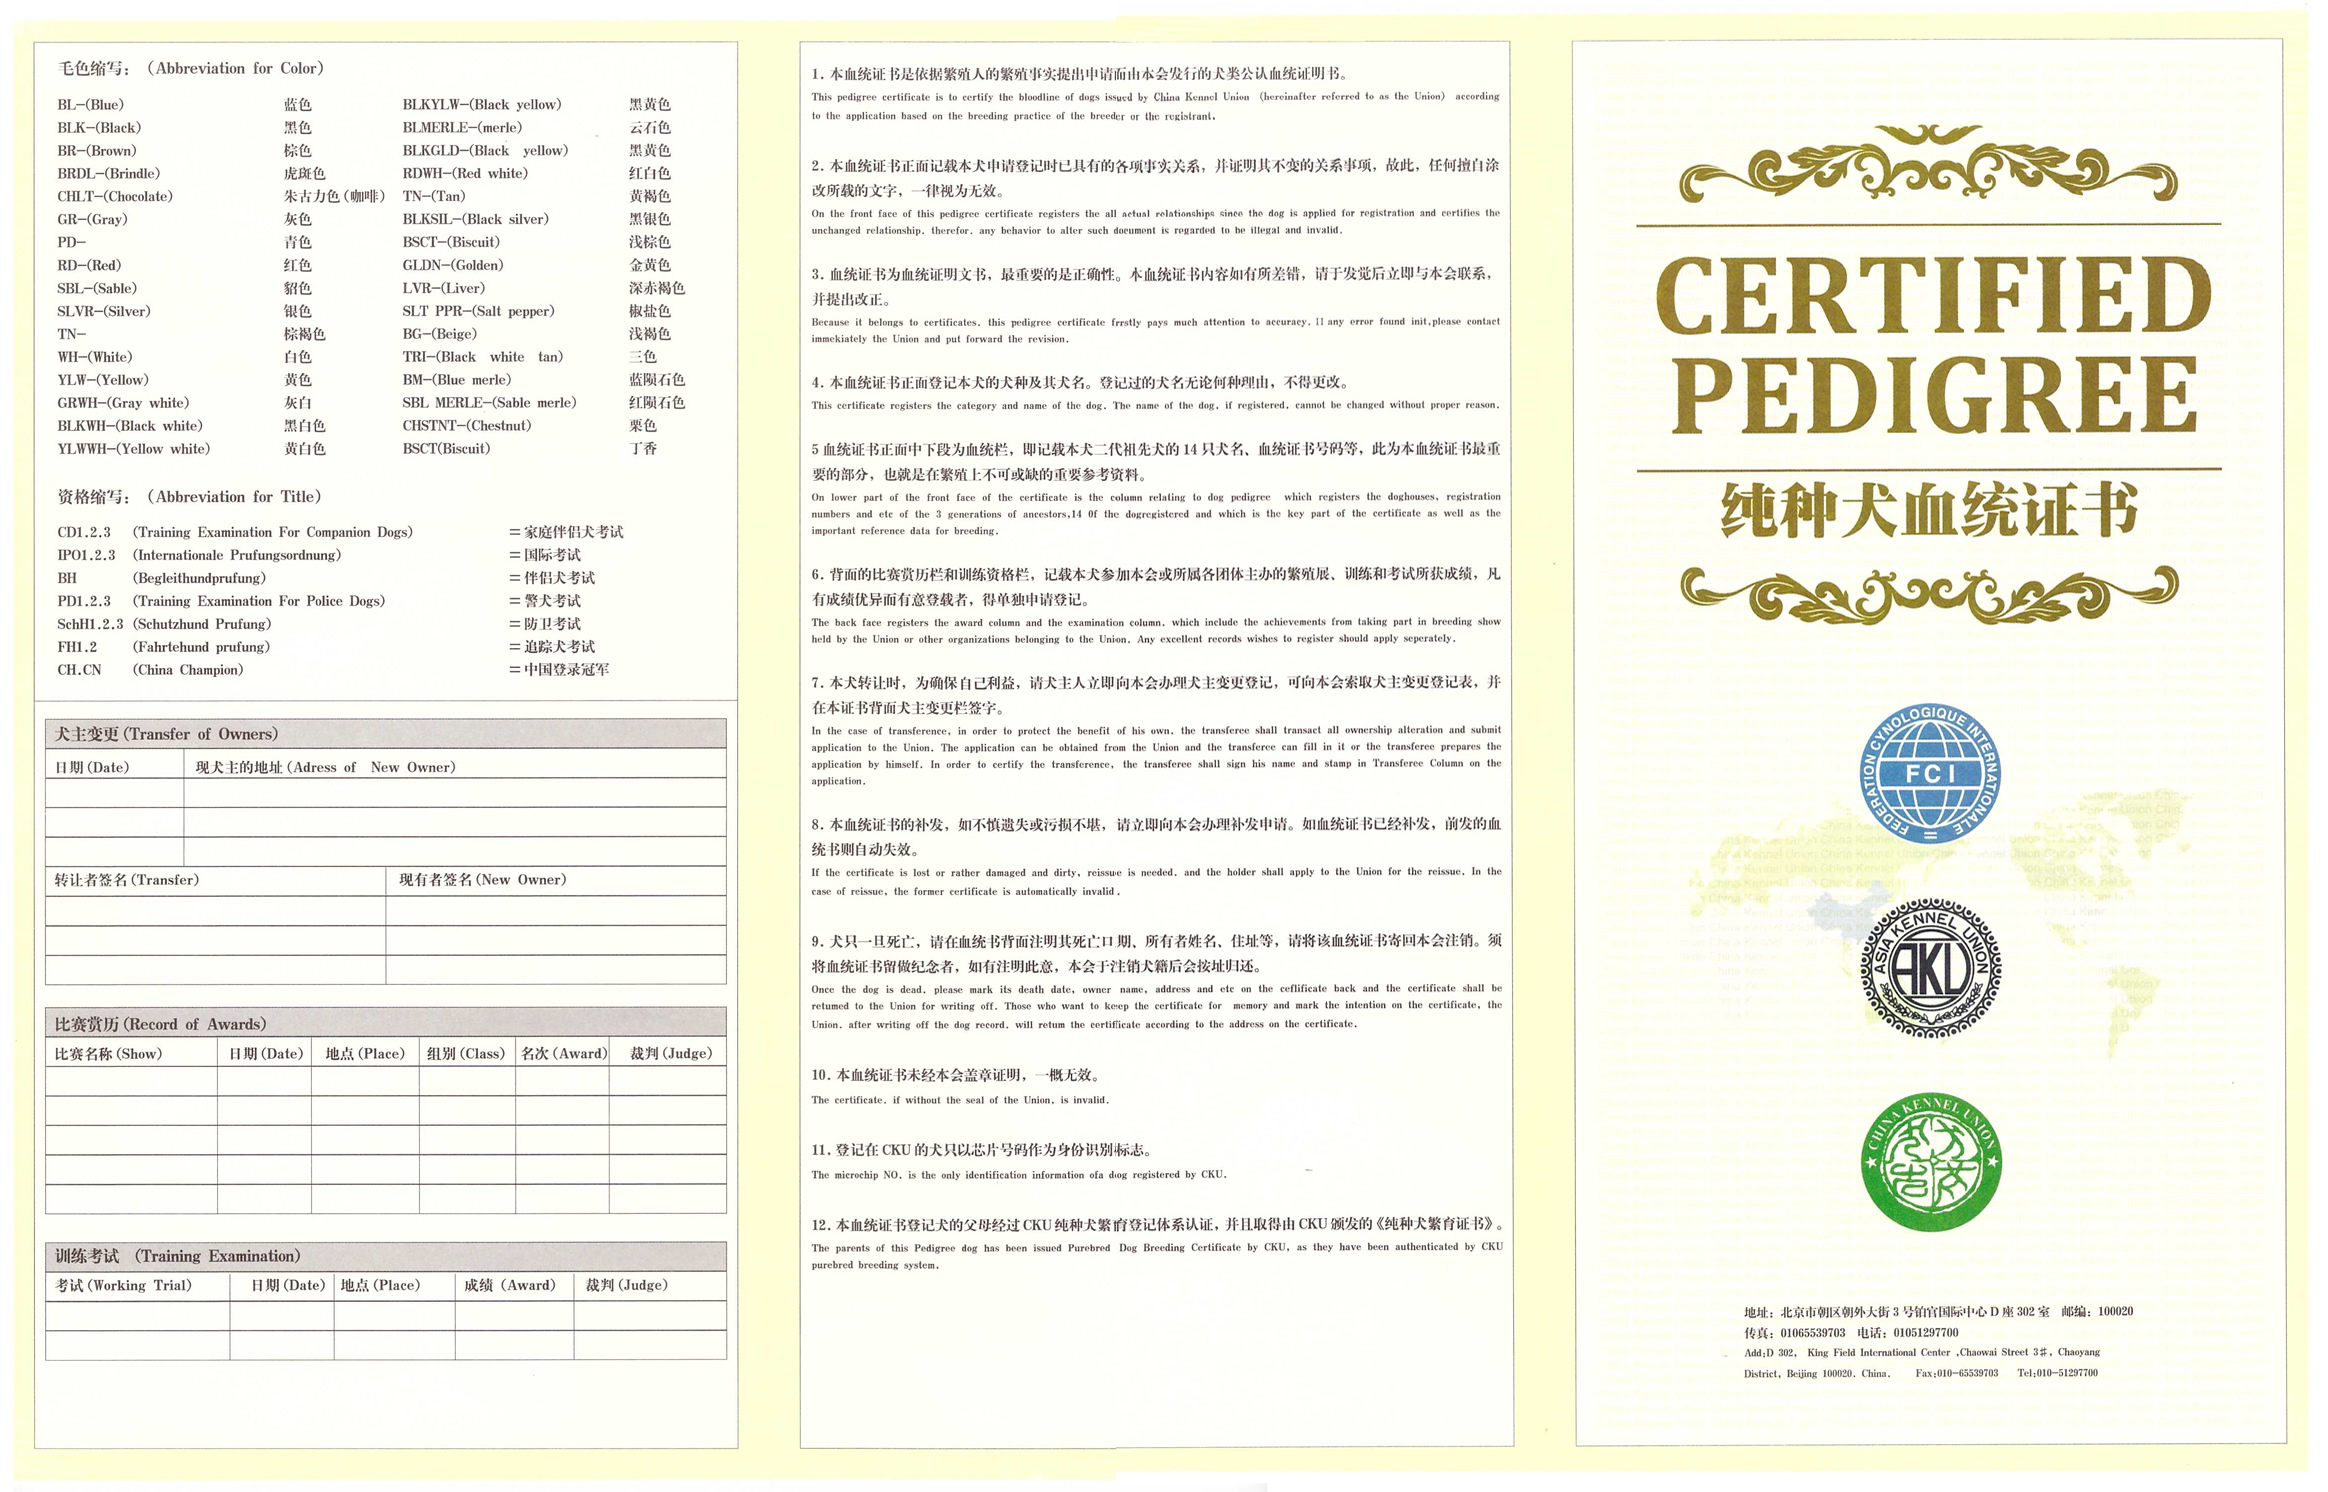 这是真正的cku血统证书,买纯种金毛时要注意